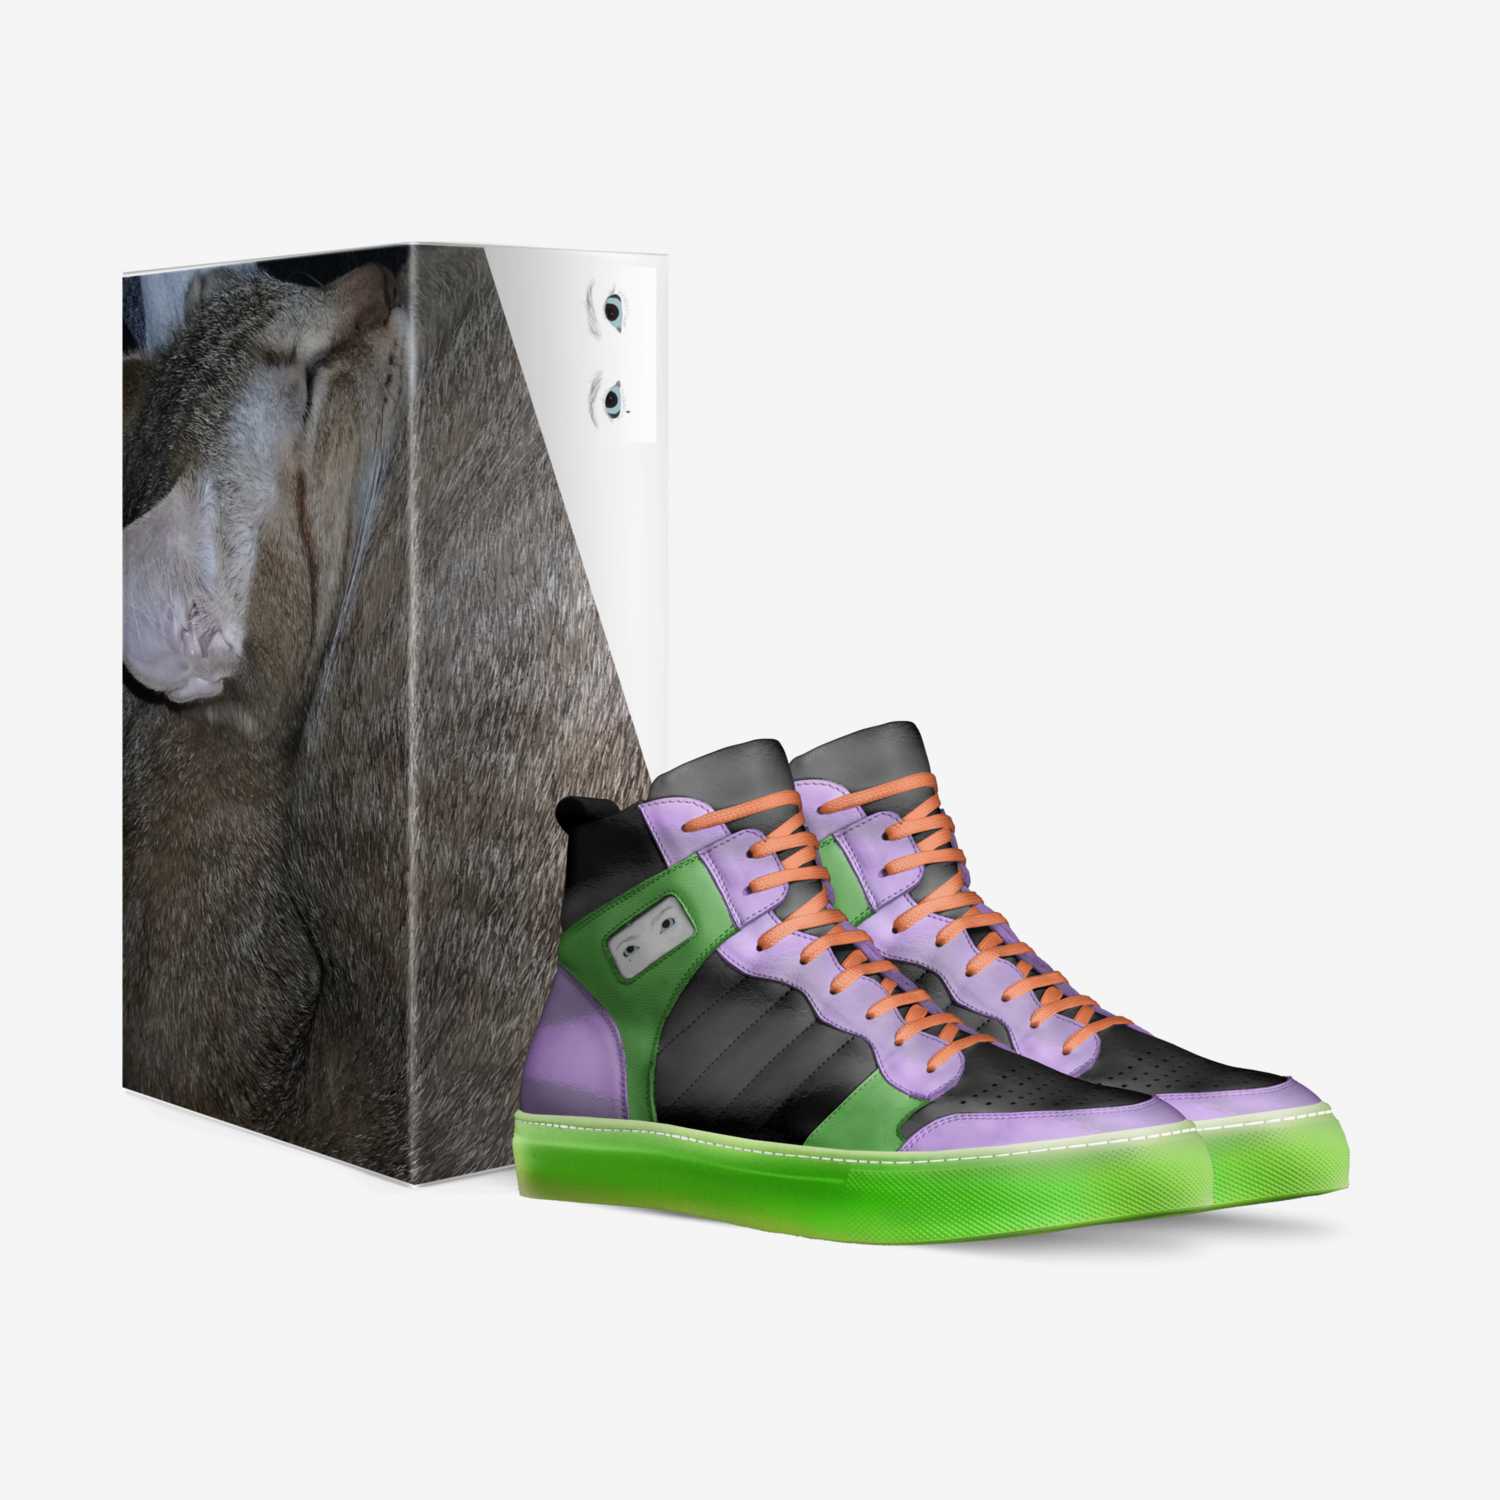 行きましょう custom made in Italy shoes by Ashley Colton | Box view